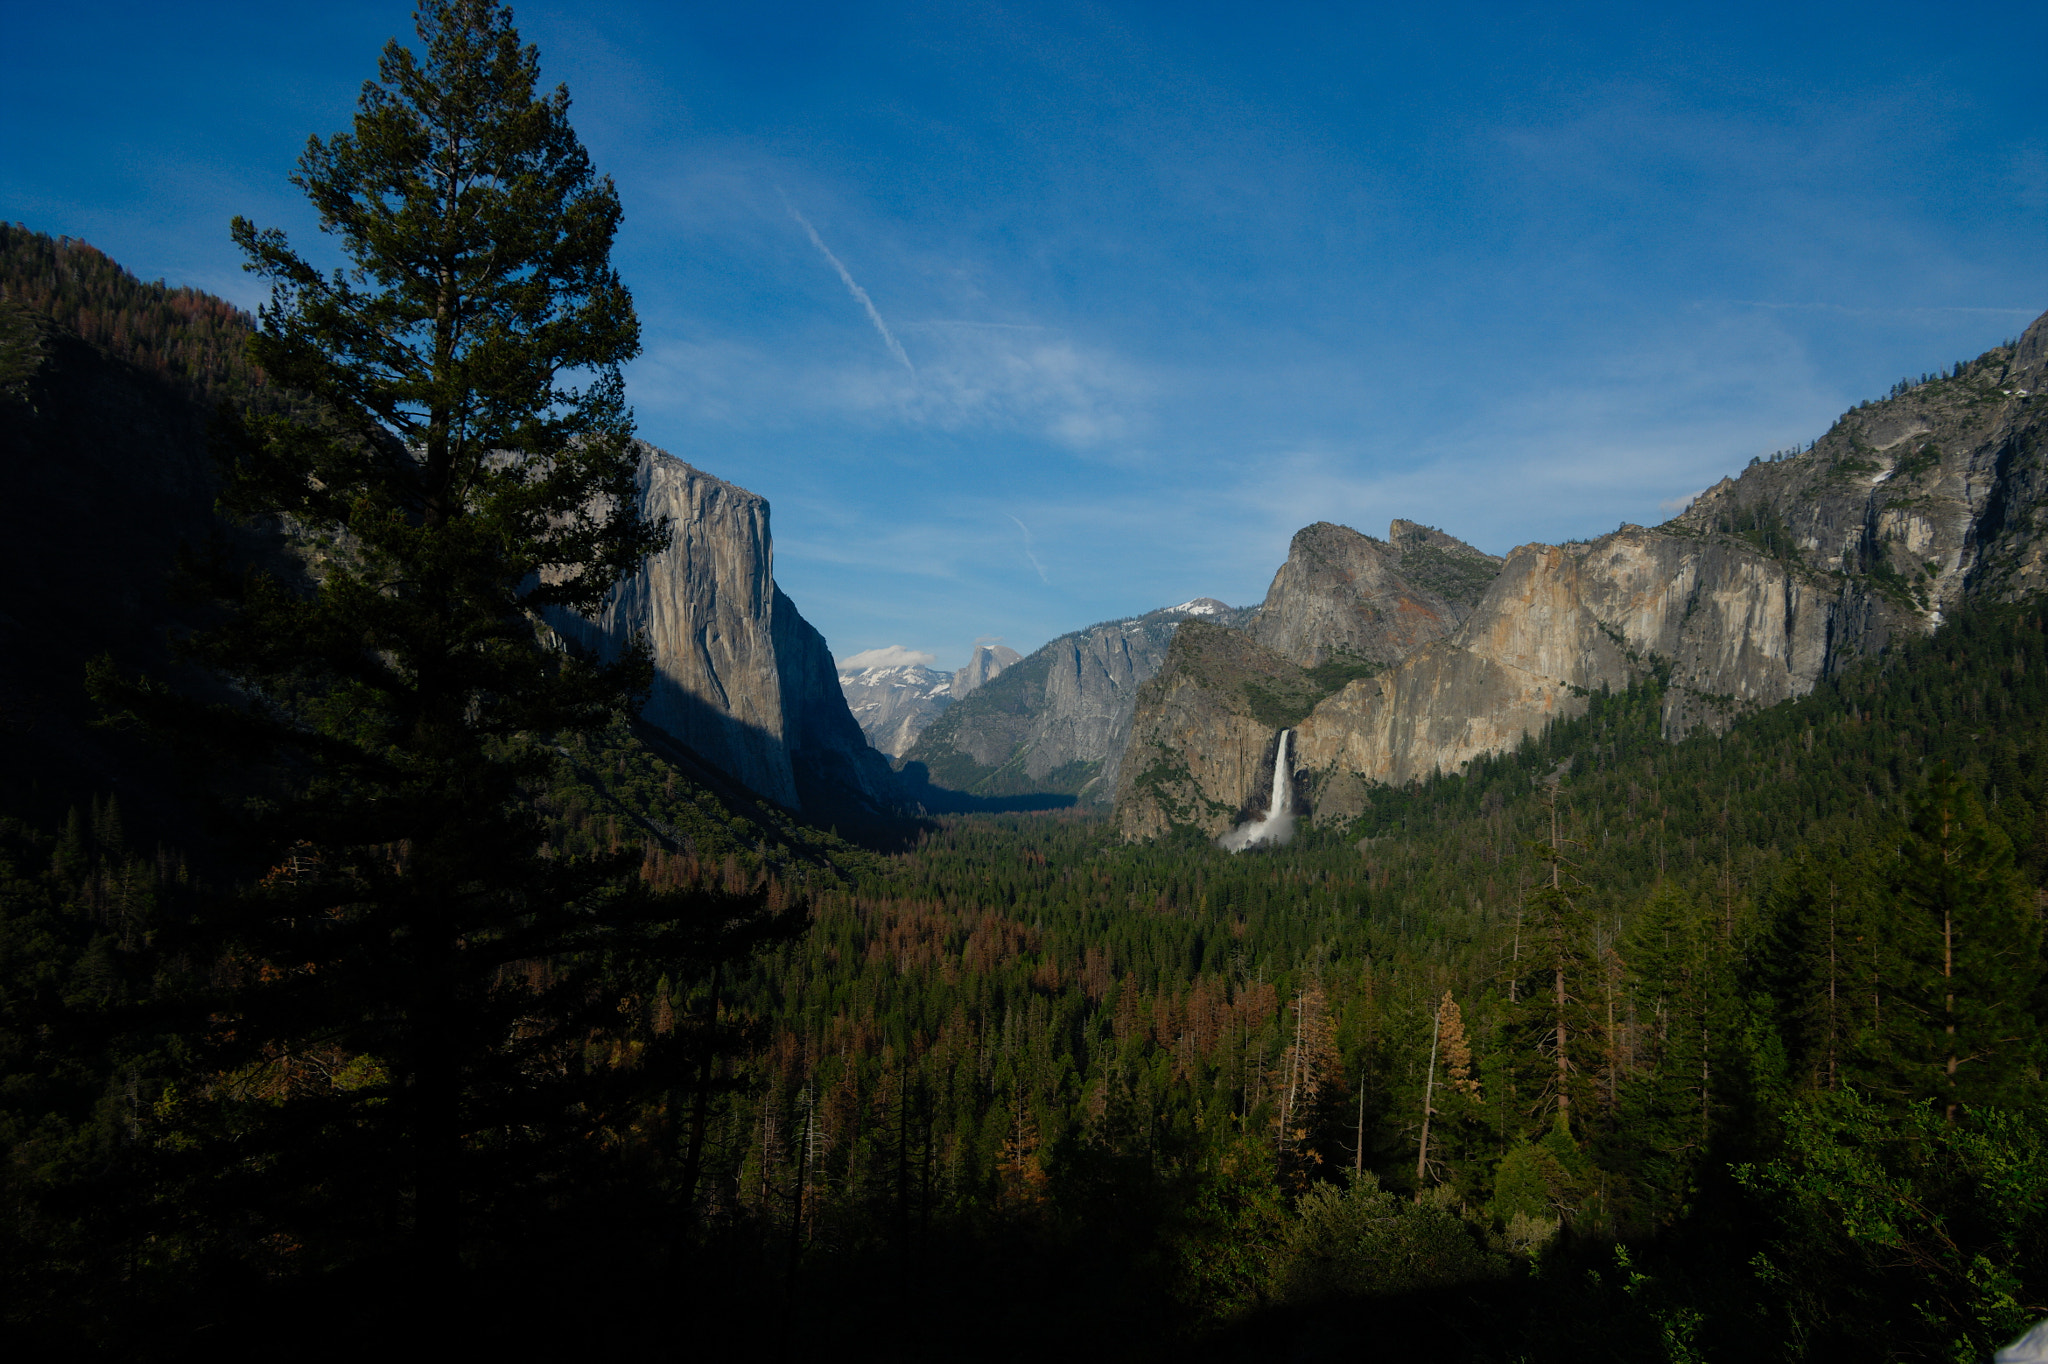 Pentax smc DA 16-45mm F4 ED AL sample photo. Yosemite valley photography